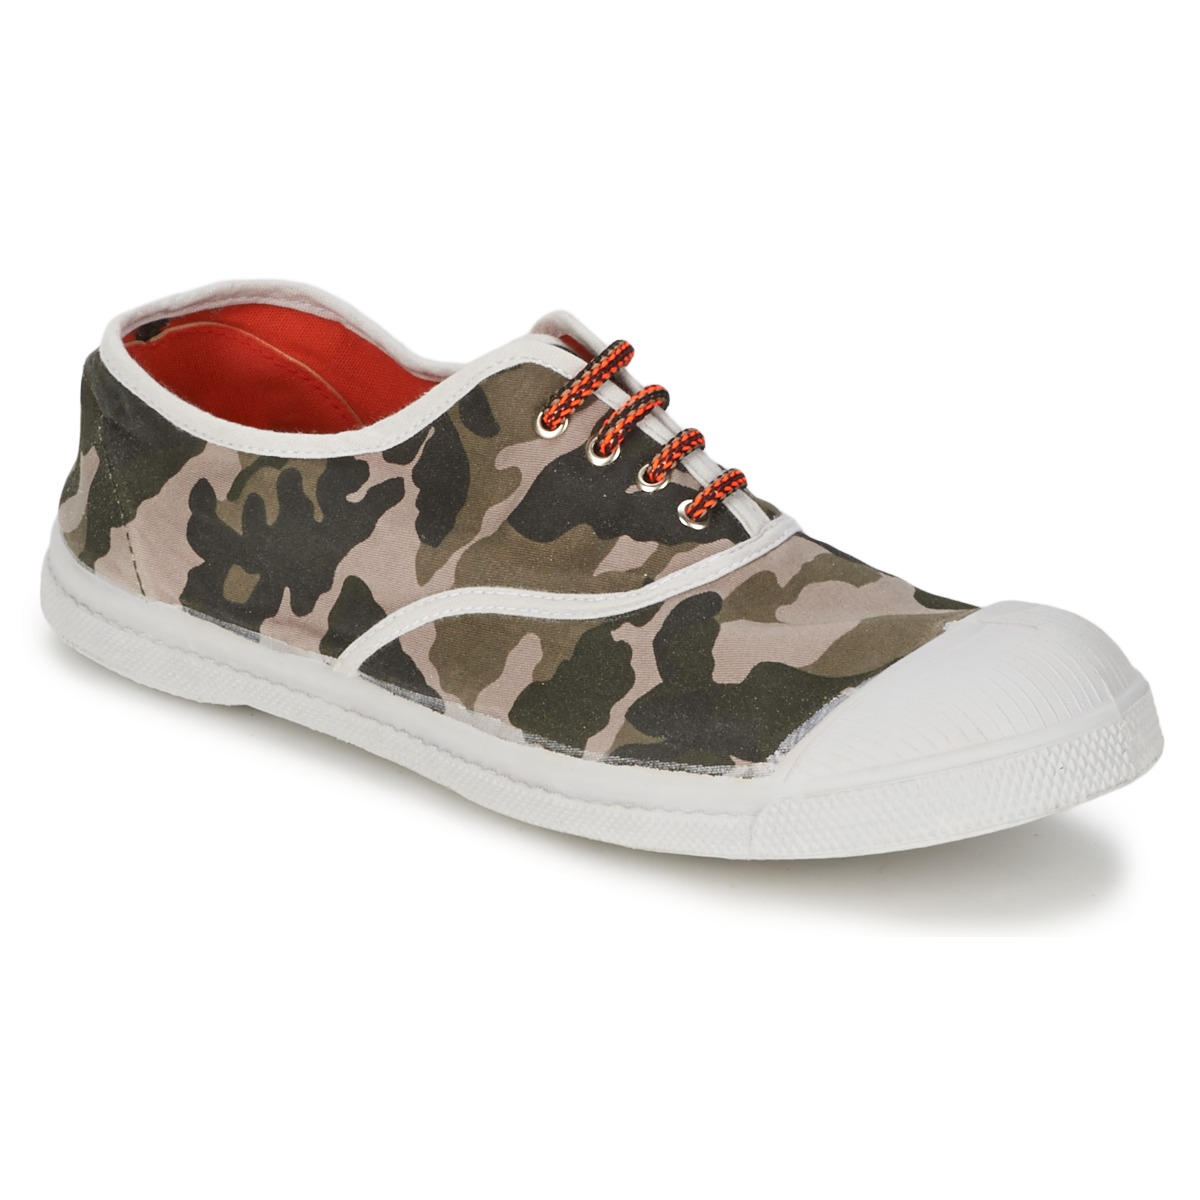 Schoenen Dames Lage sneakers Bensimon TENNIS CAMOFLUO Camouflage